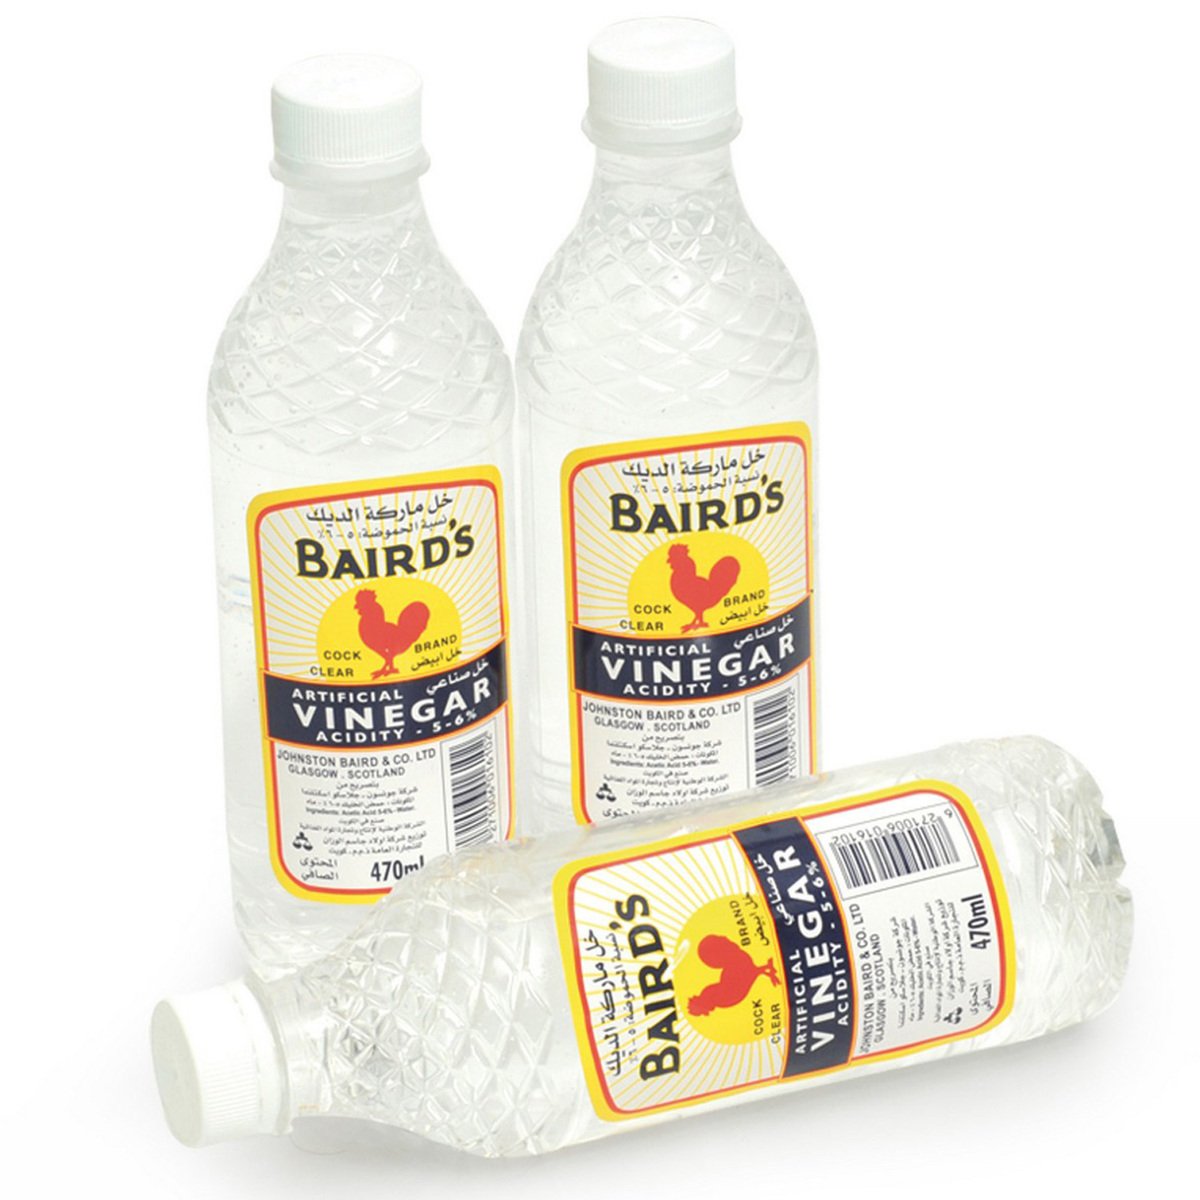 Bairds artificial Vinegar 470ml x 3pcs